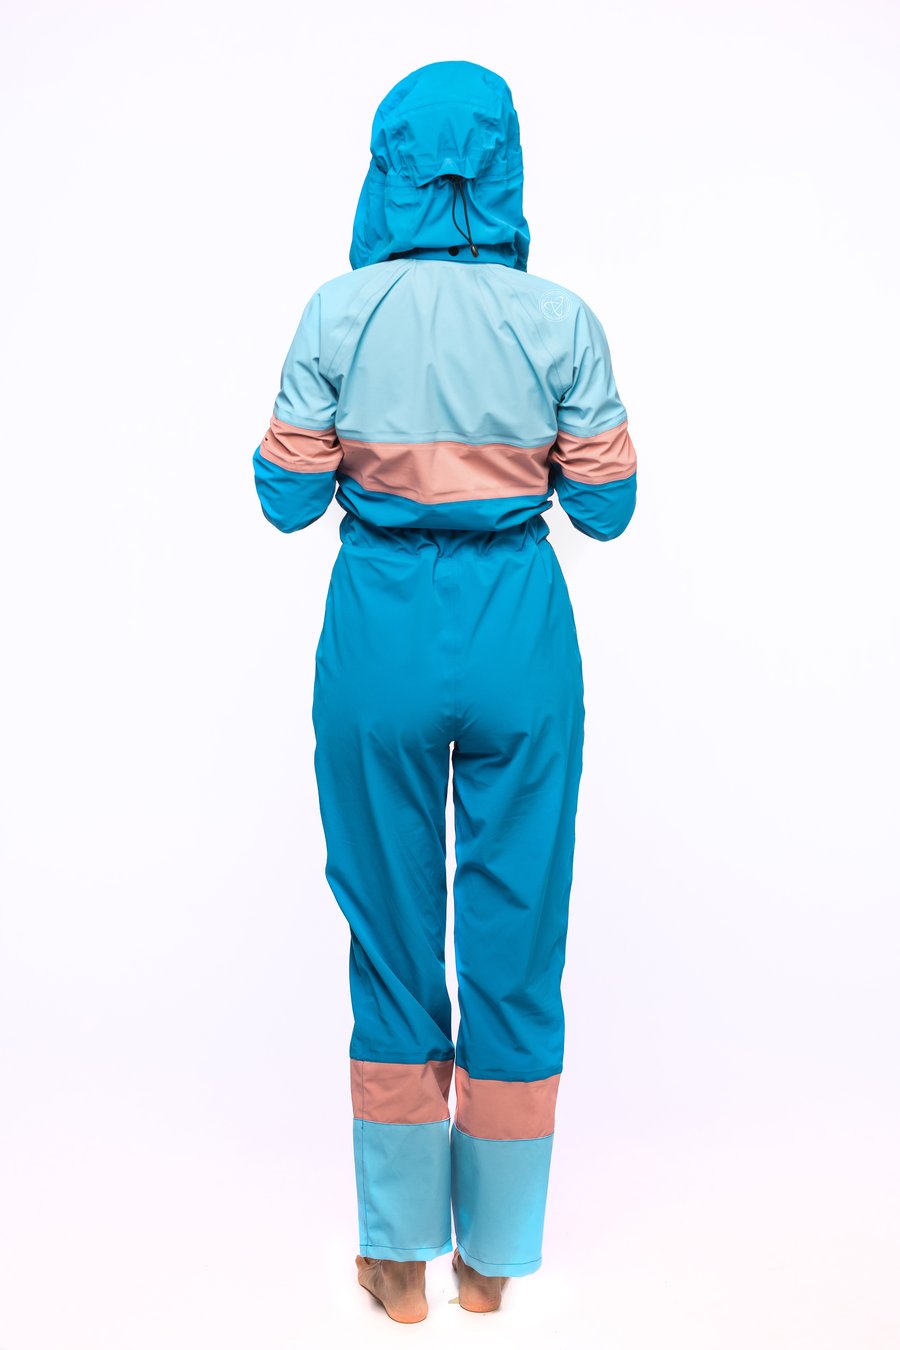 StandOut SUP wear Gaia tørrdrakt  damemodell. Fleksibel og lett tørrdrakt for alle typer helårspadling. Hold deg tørr om vinteren.